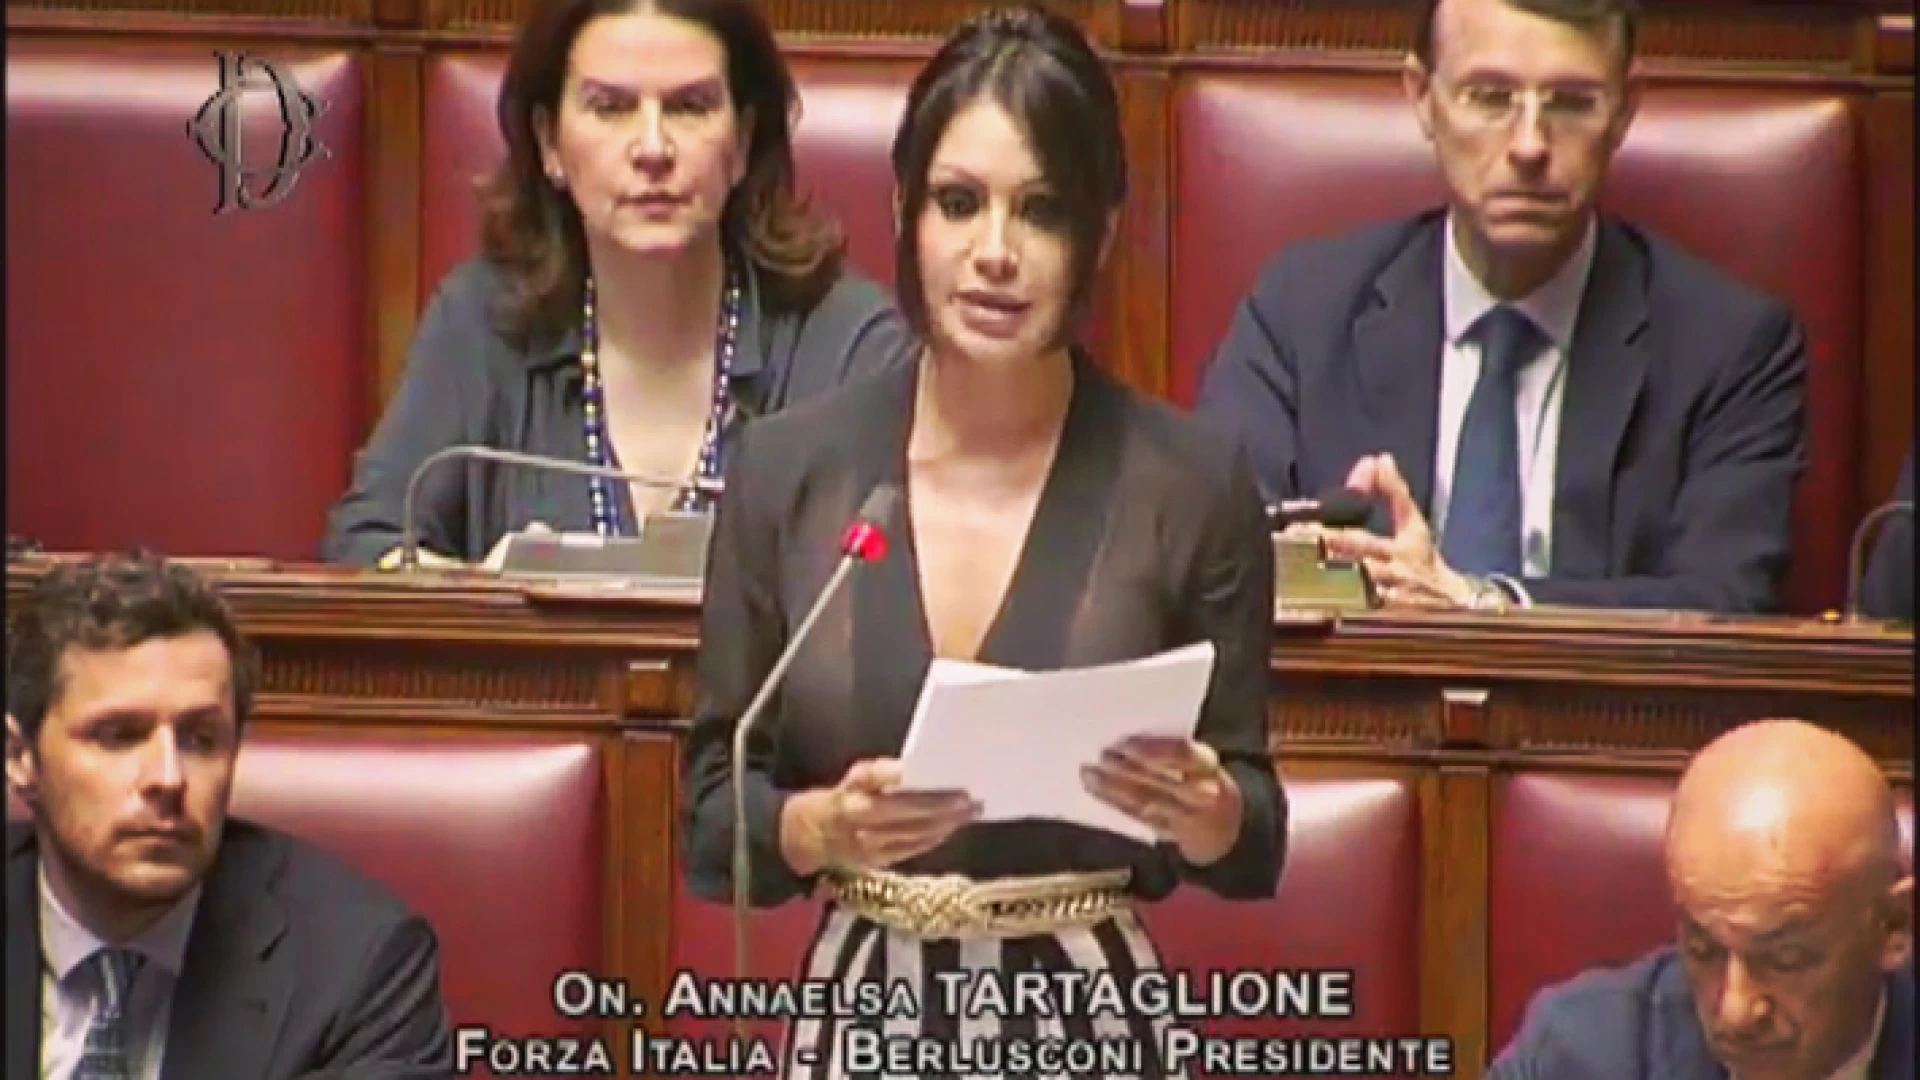 Un tetto alle tasse in Costituzione, parte da Isernia la raccolta firme di Forza Italia.